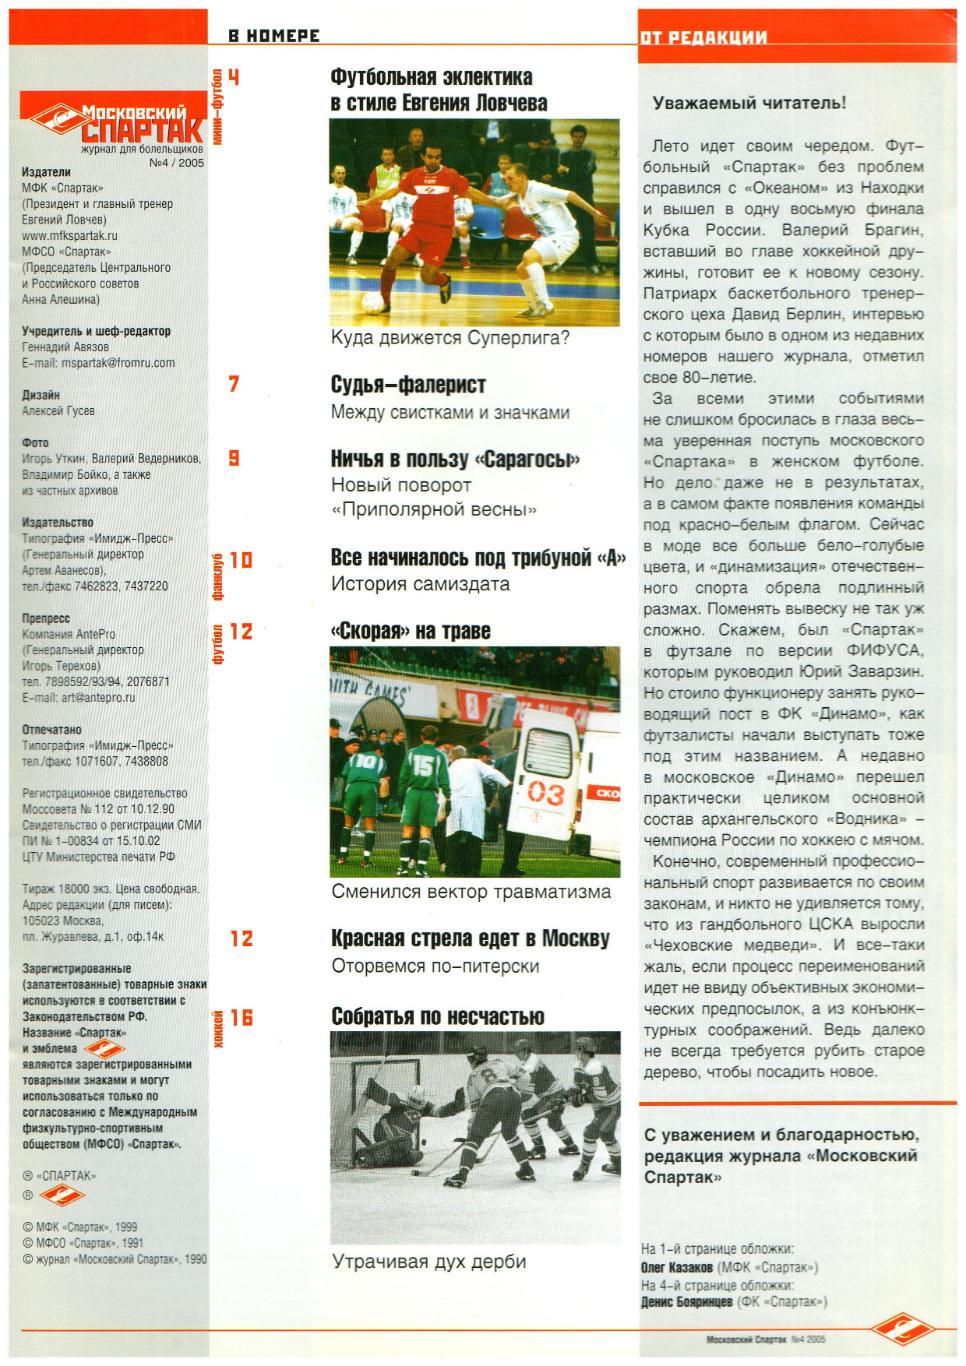 Журнал Московский Спартак 2005 №4 июль-август Клуб болельщиков/Бояринцев/1996 г 1